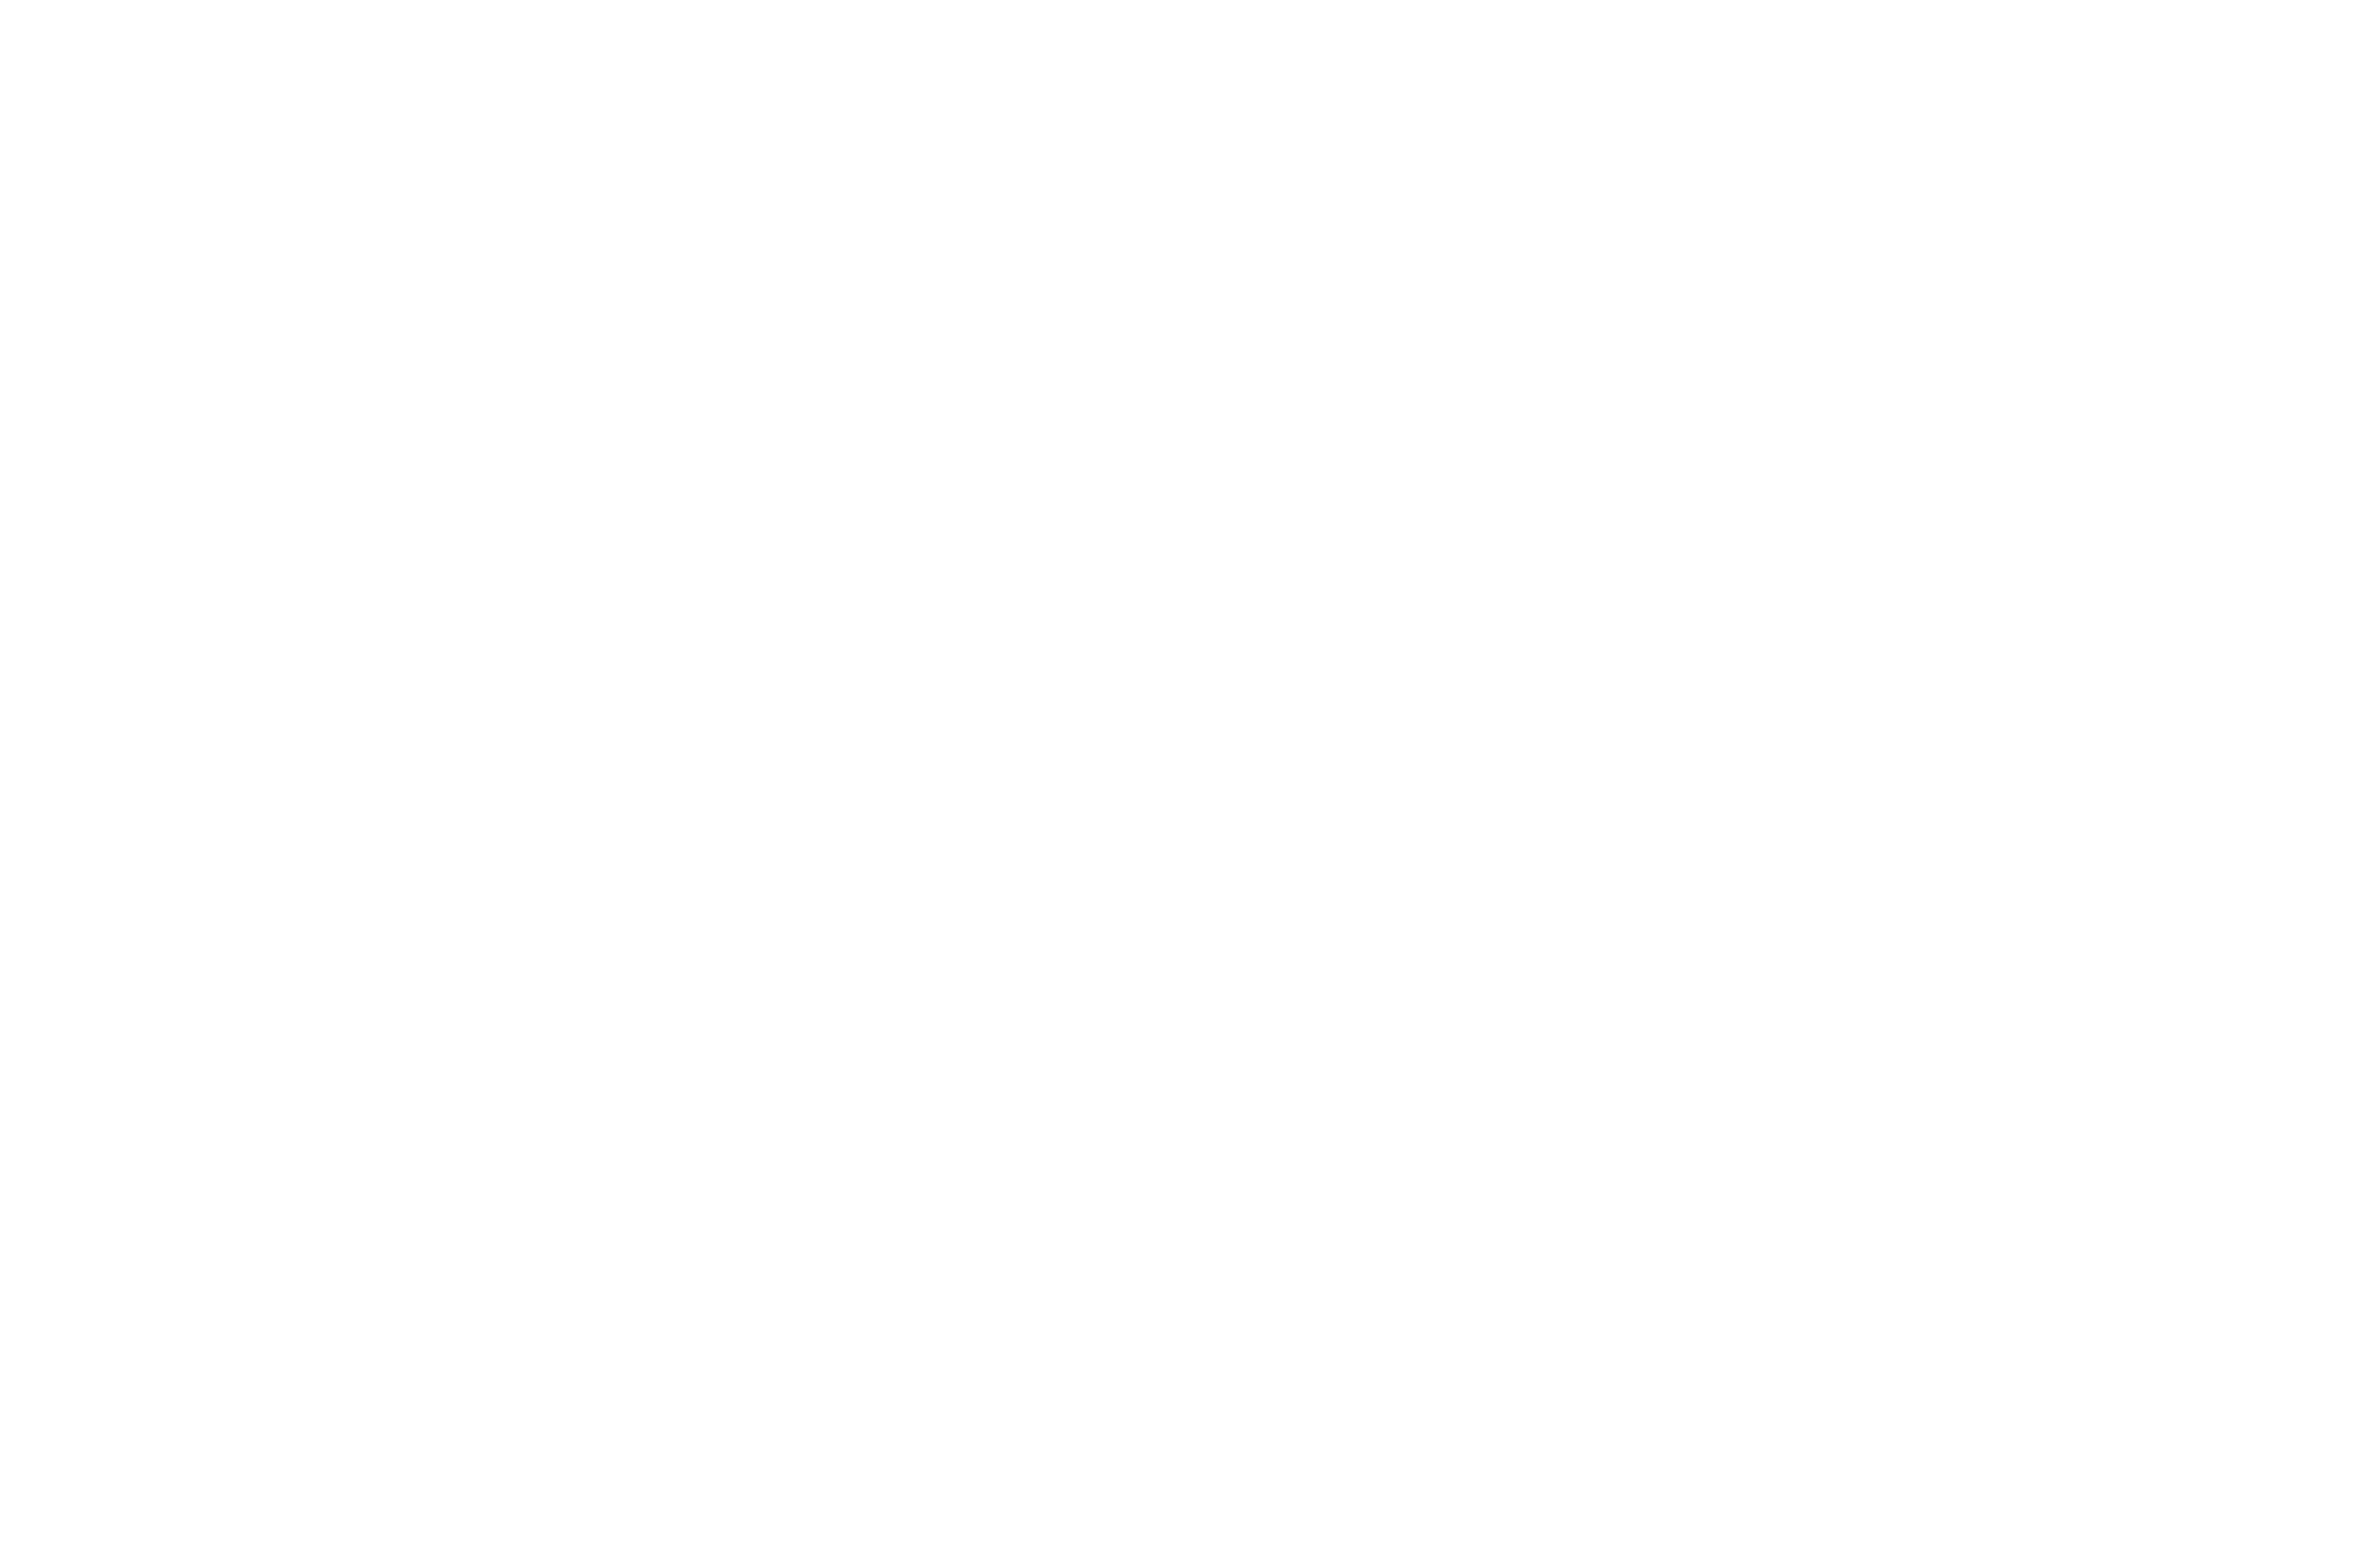 Hackajob